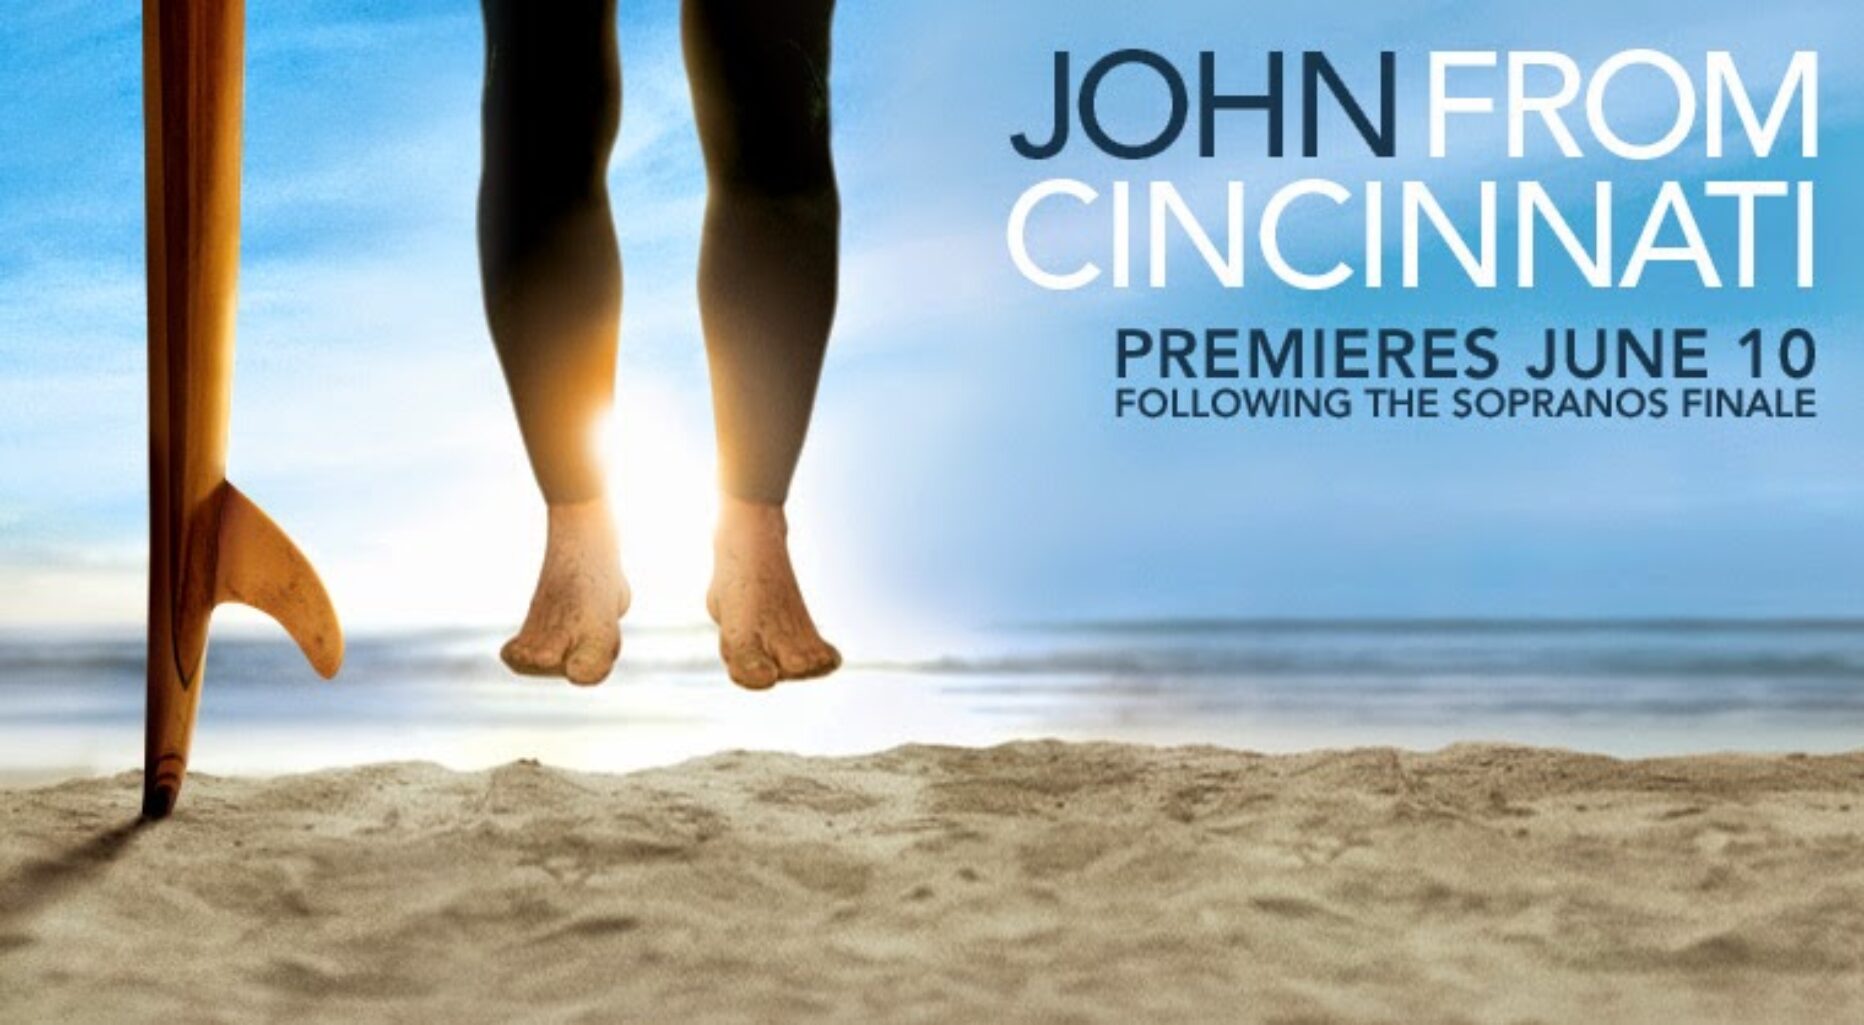 Serie che dovreste proprio recuperare #1: John From Cincinnati